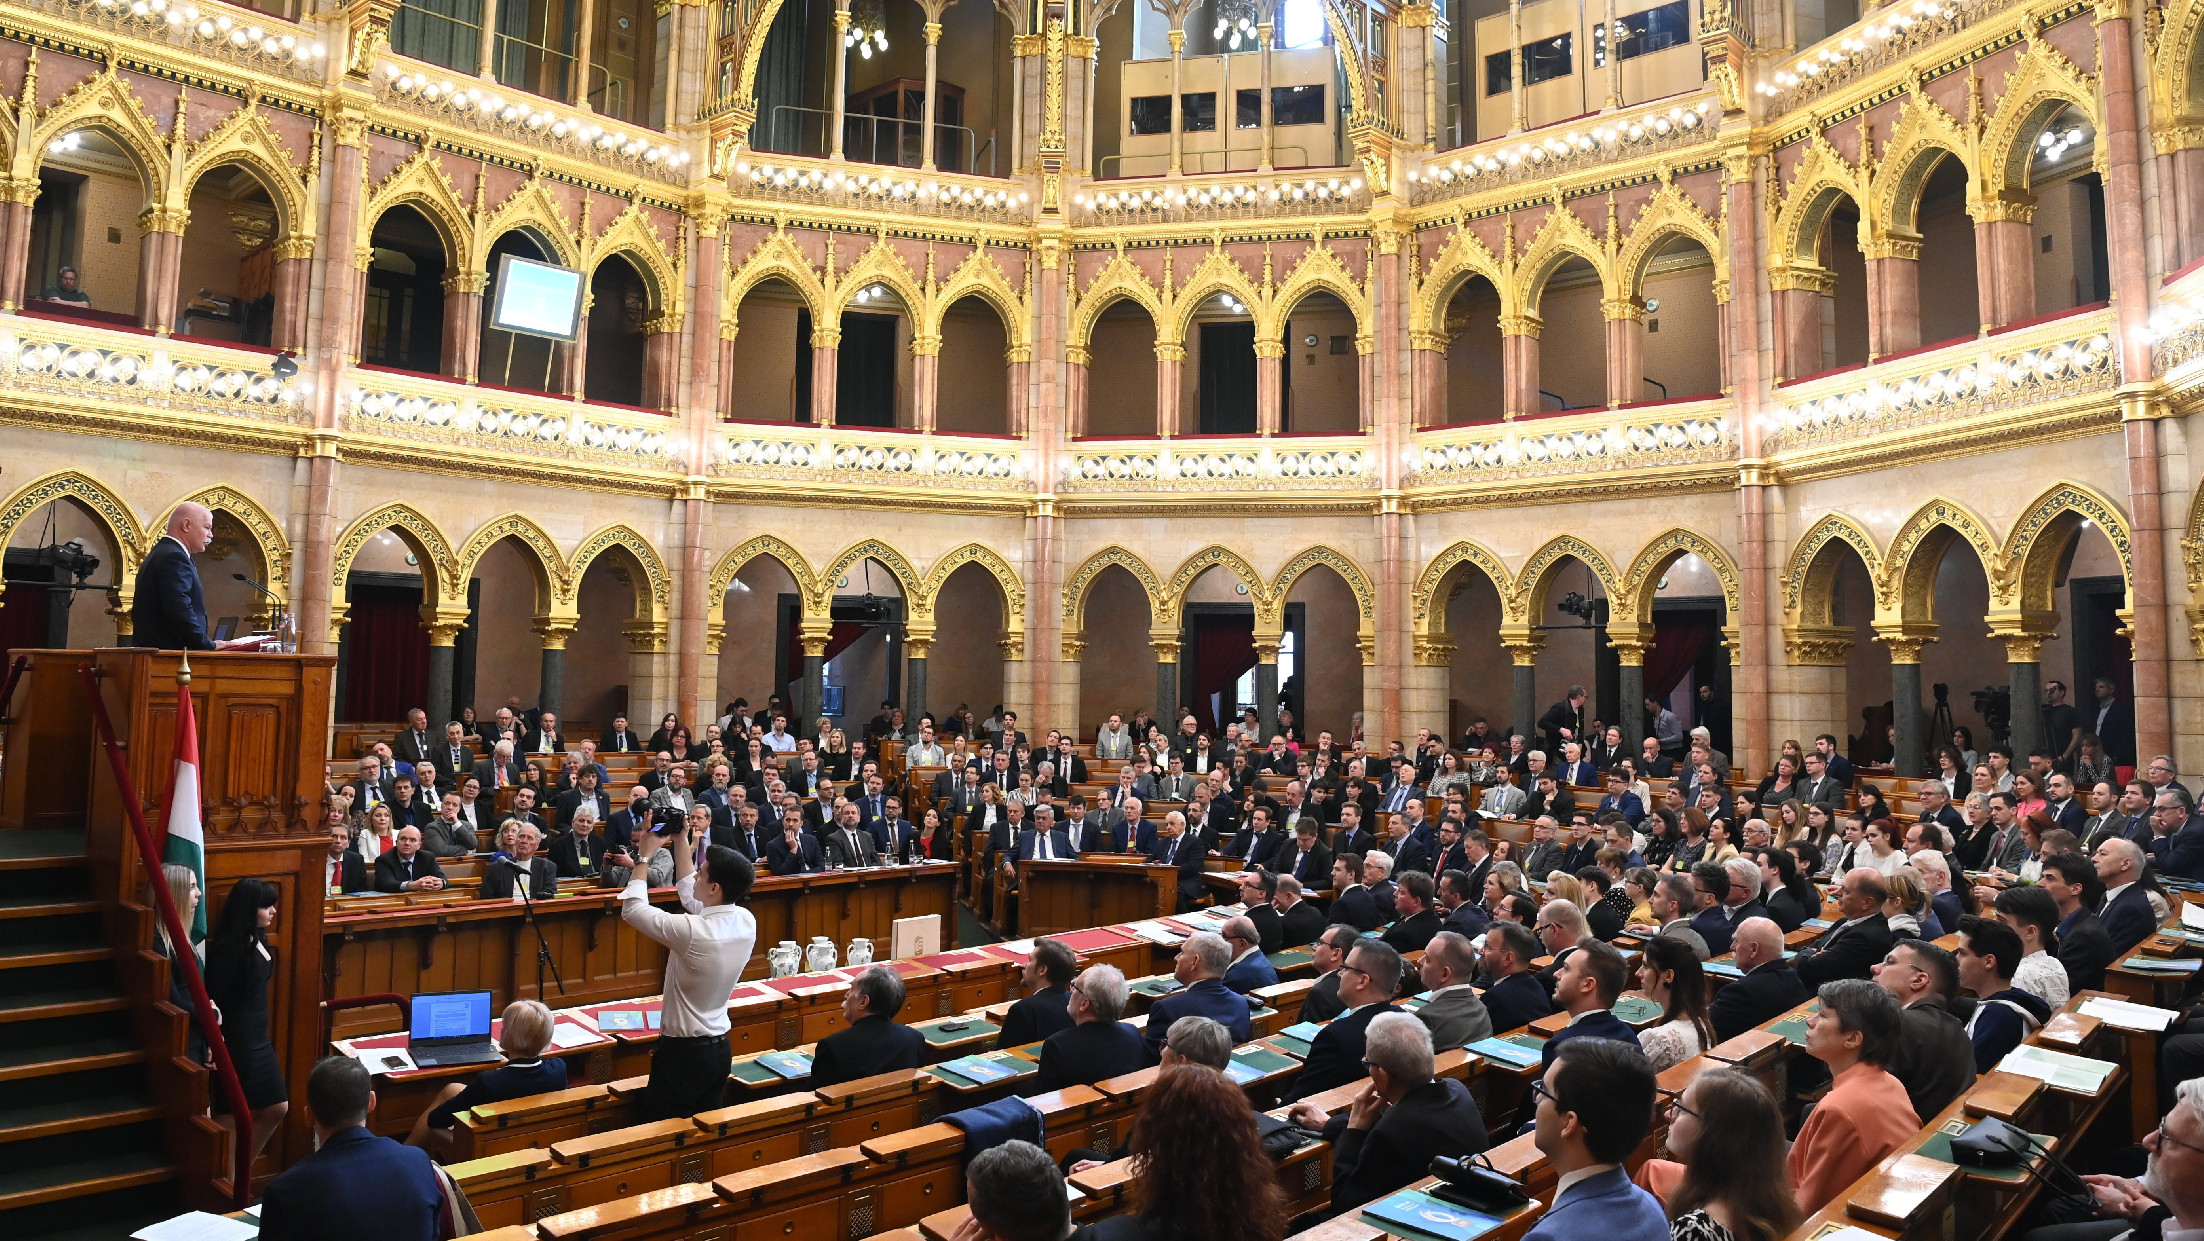 Módosította az idei költségvetést a parlament: megnövekedett a rezsivédelmi alap és a nyugdíjalap